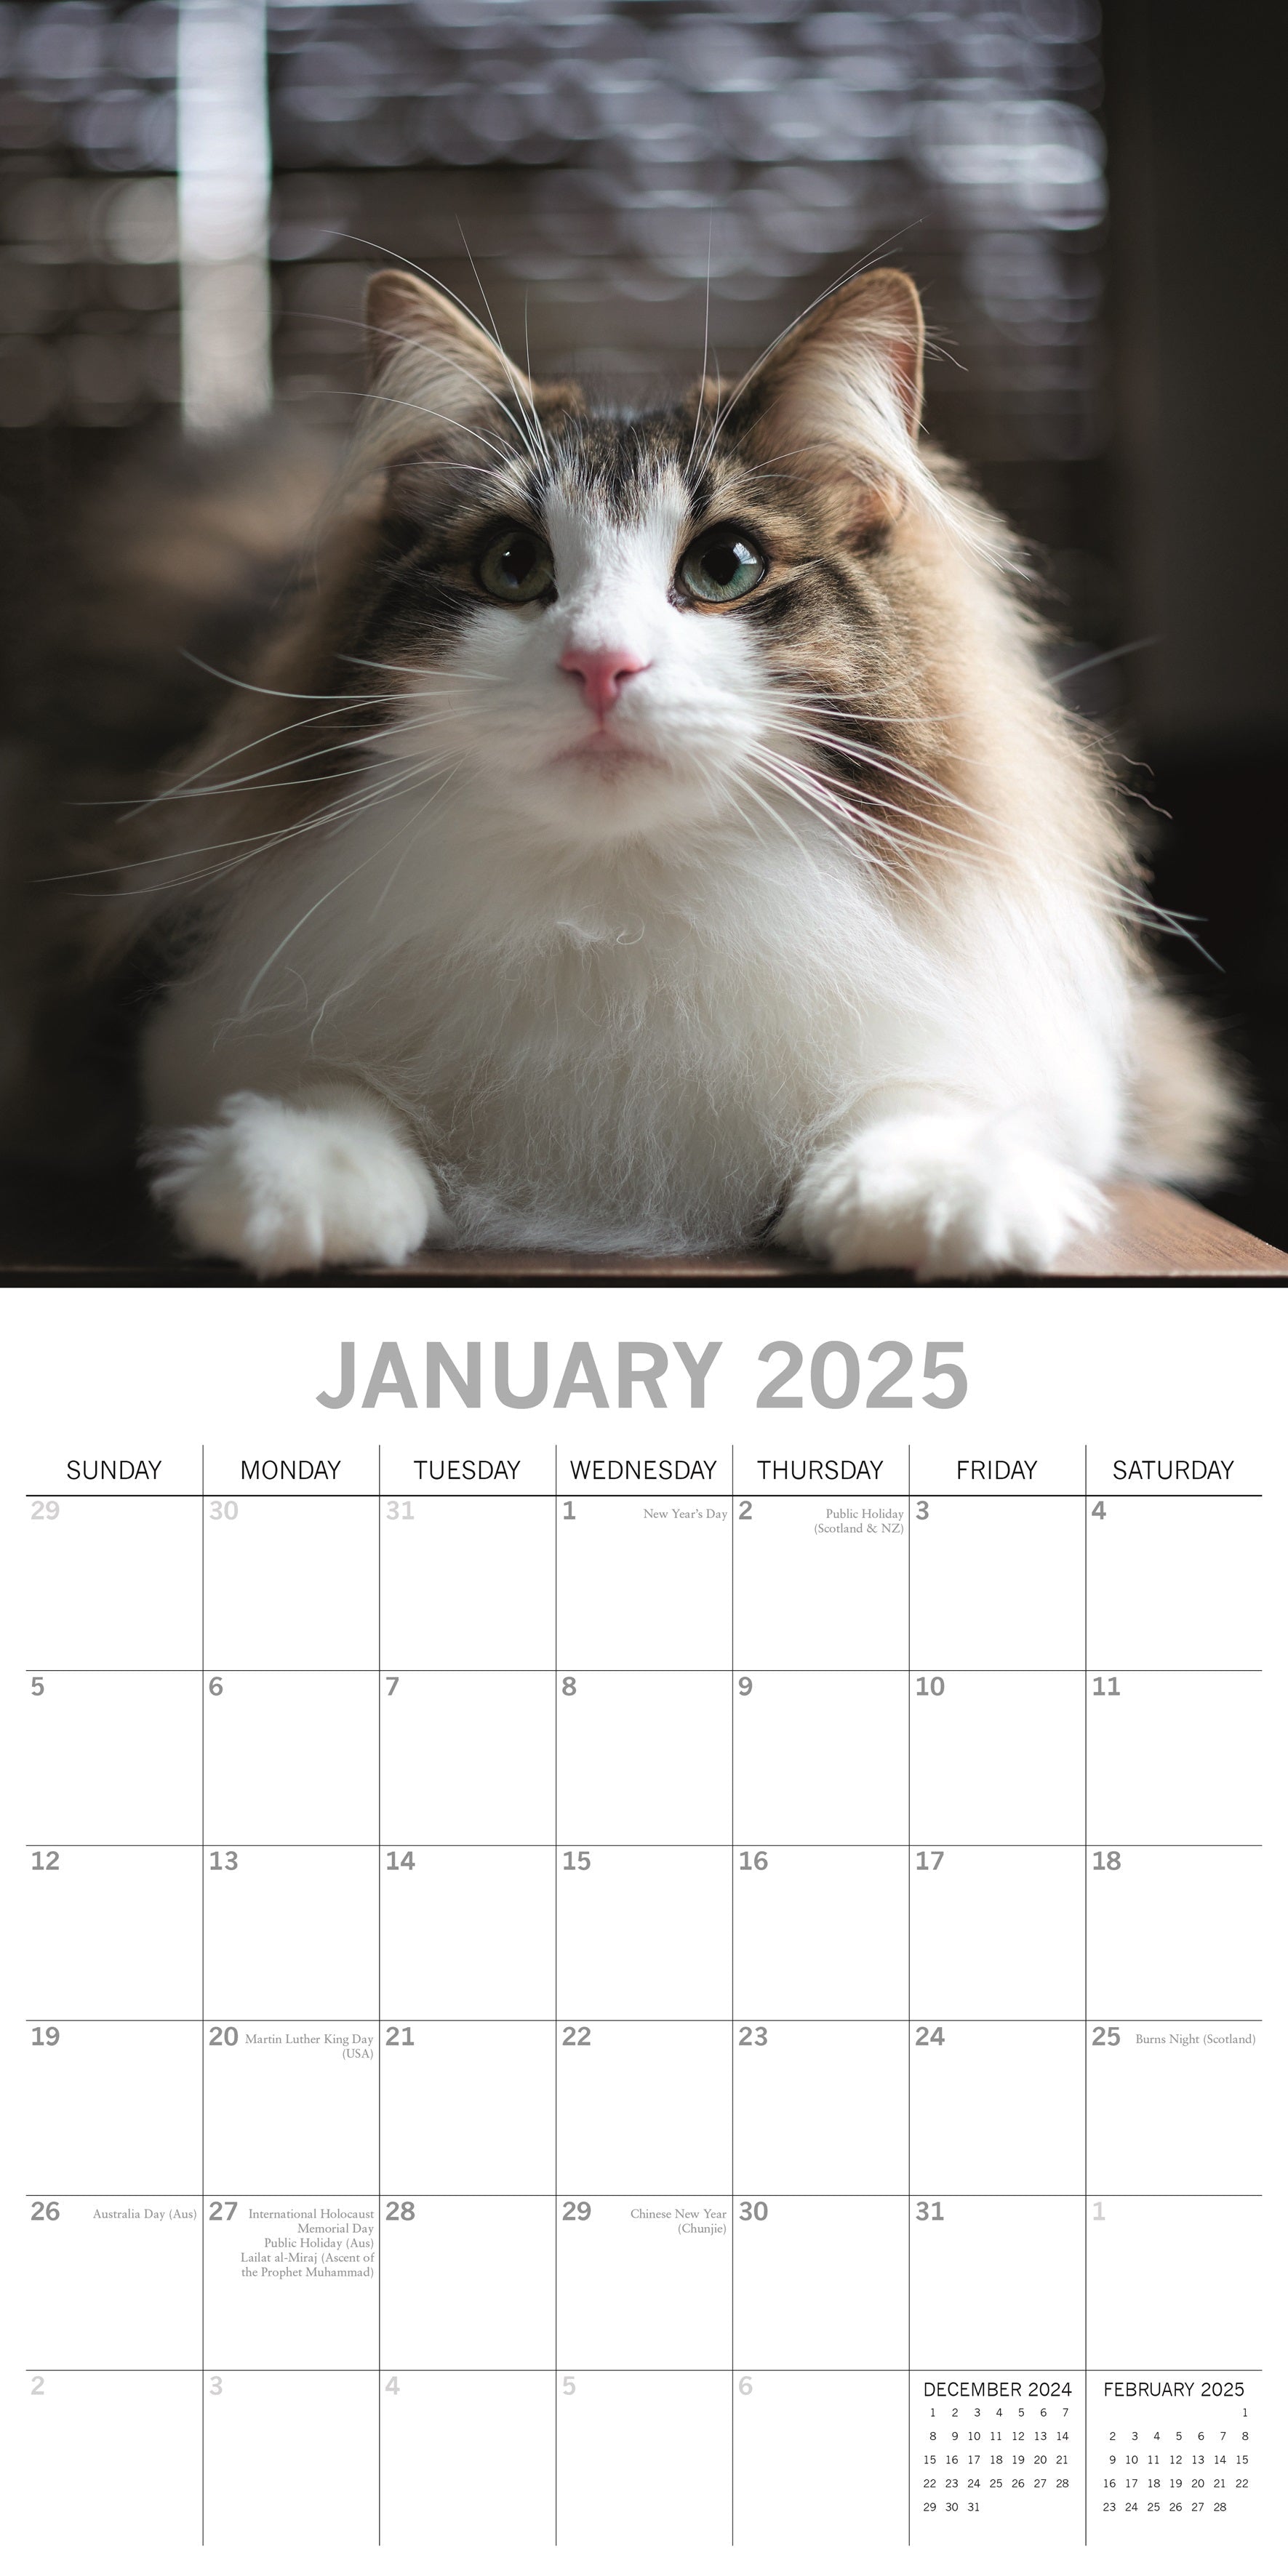 2025 Top Cats - Square Wall Calendar